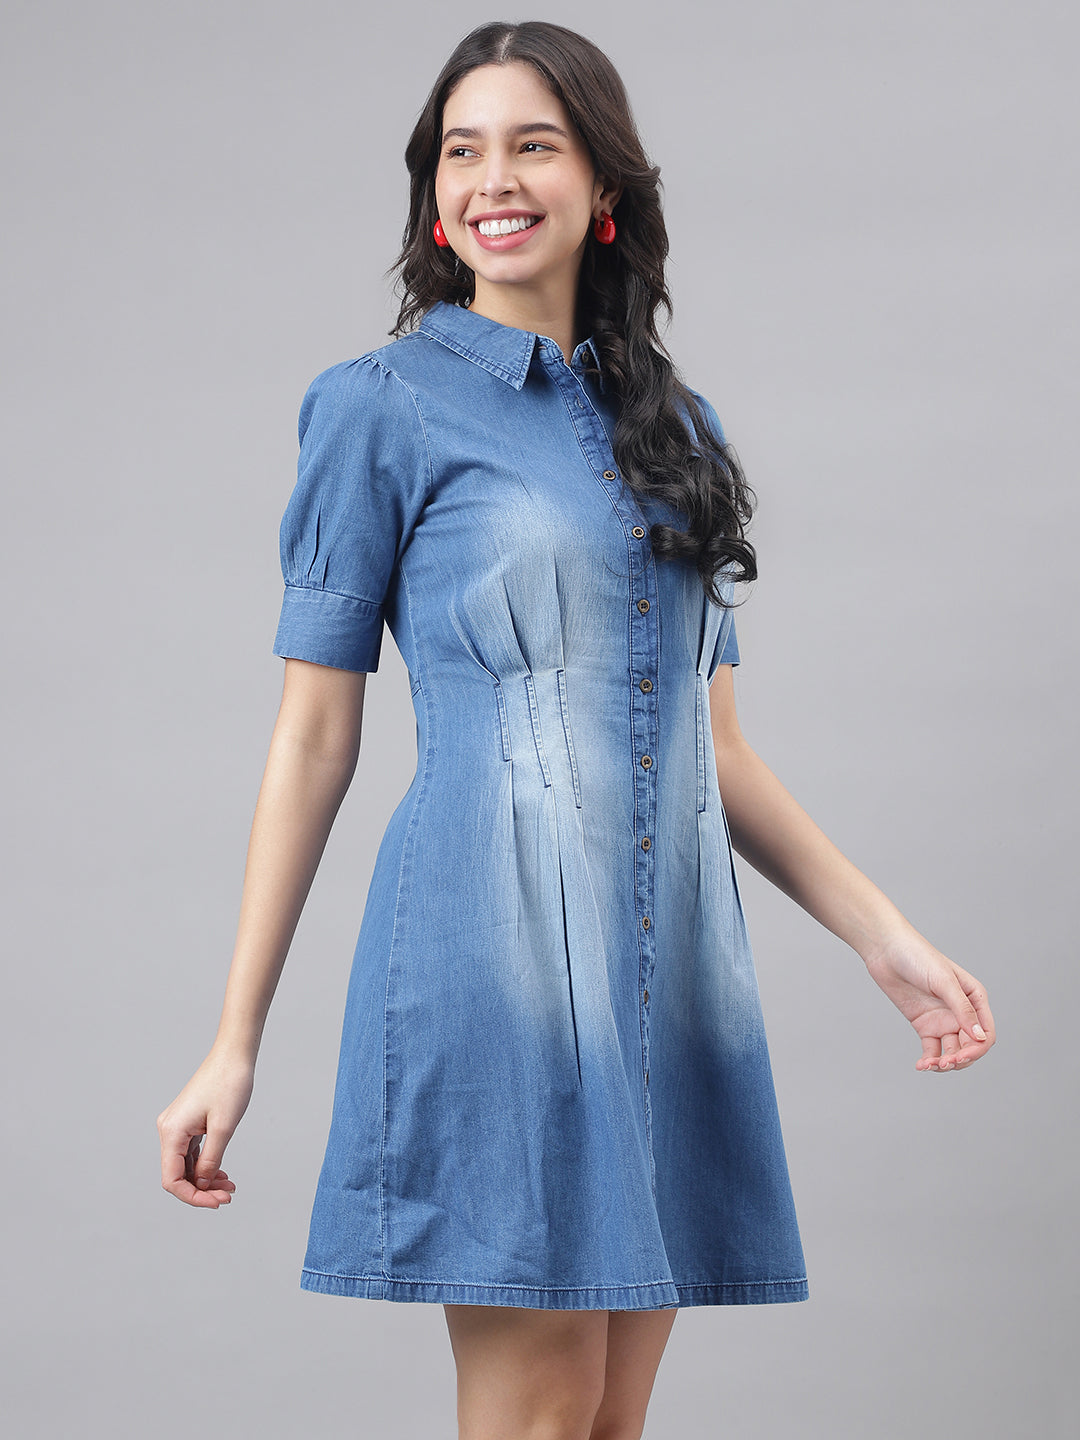 Blue Half Sleeve Shirt Collar Women Shirt Dress